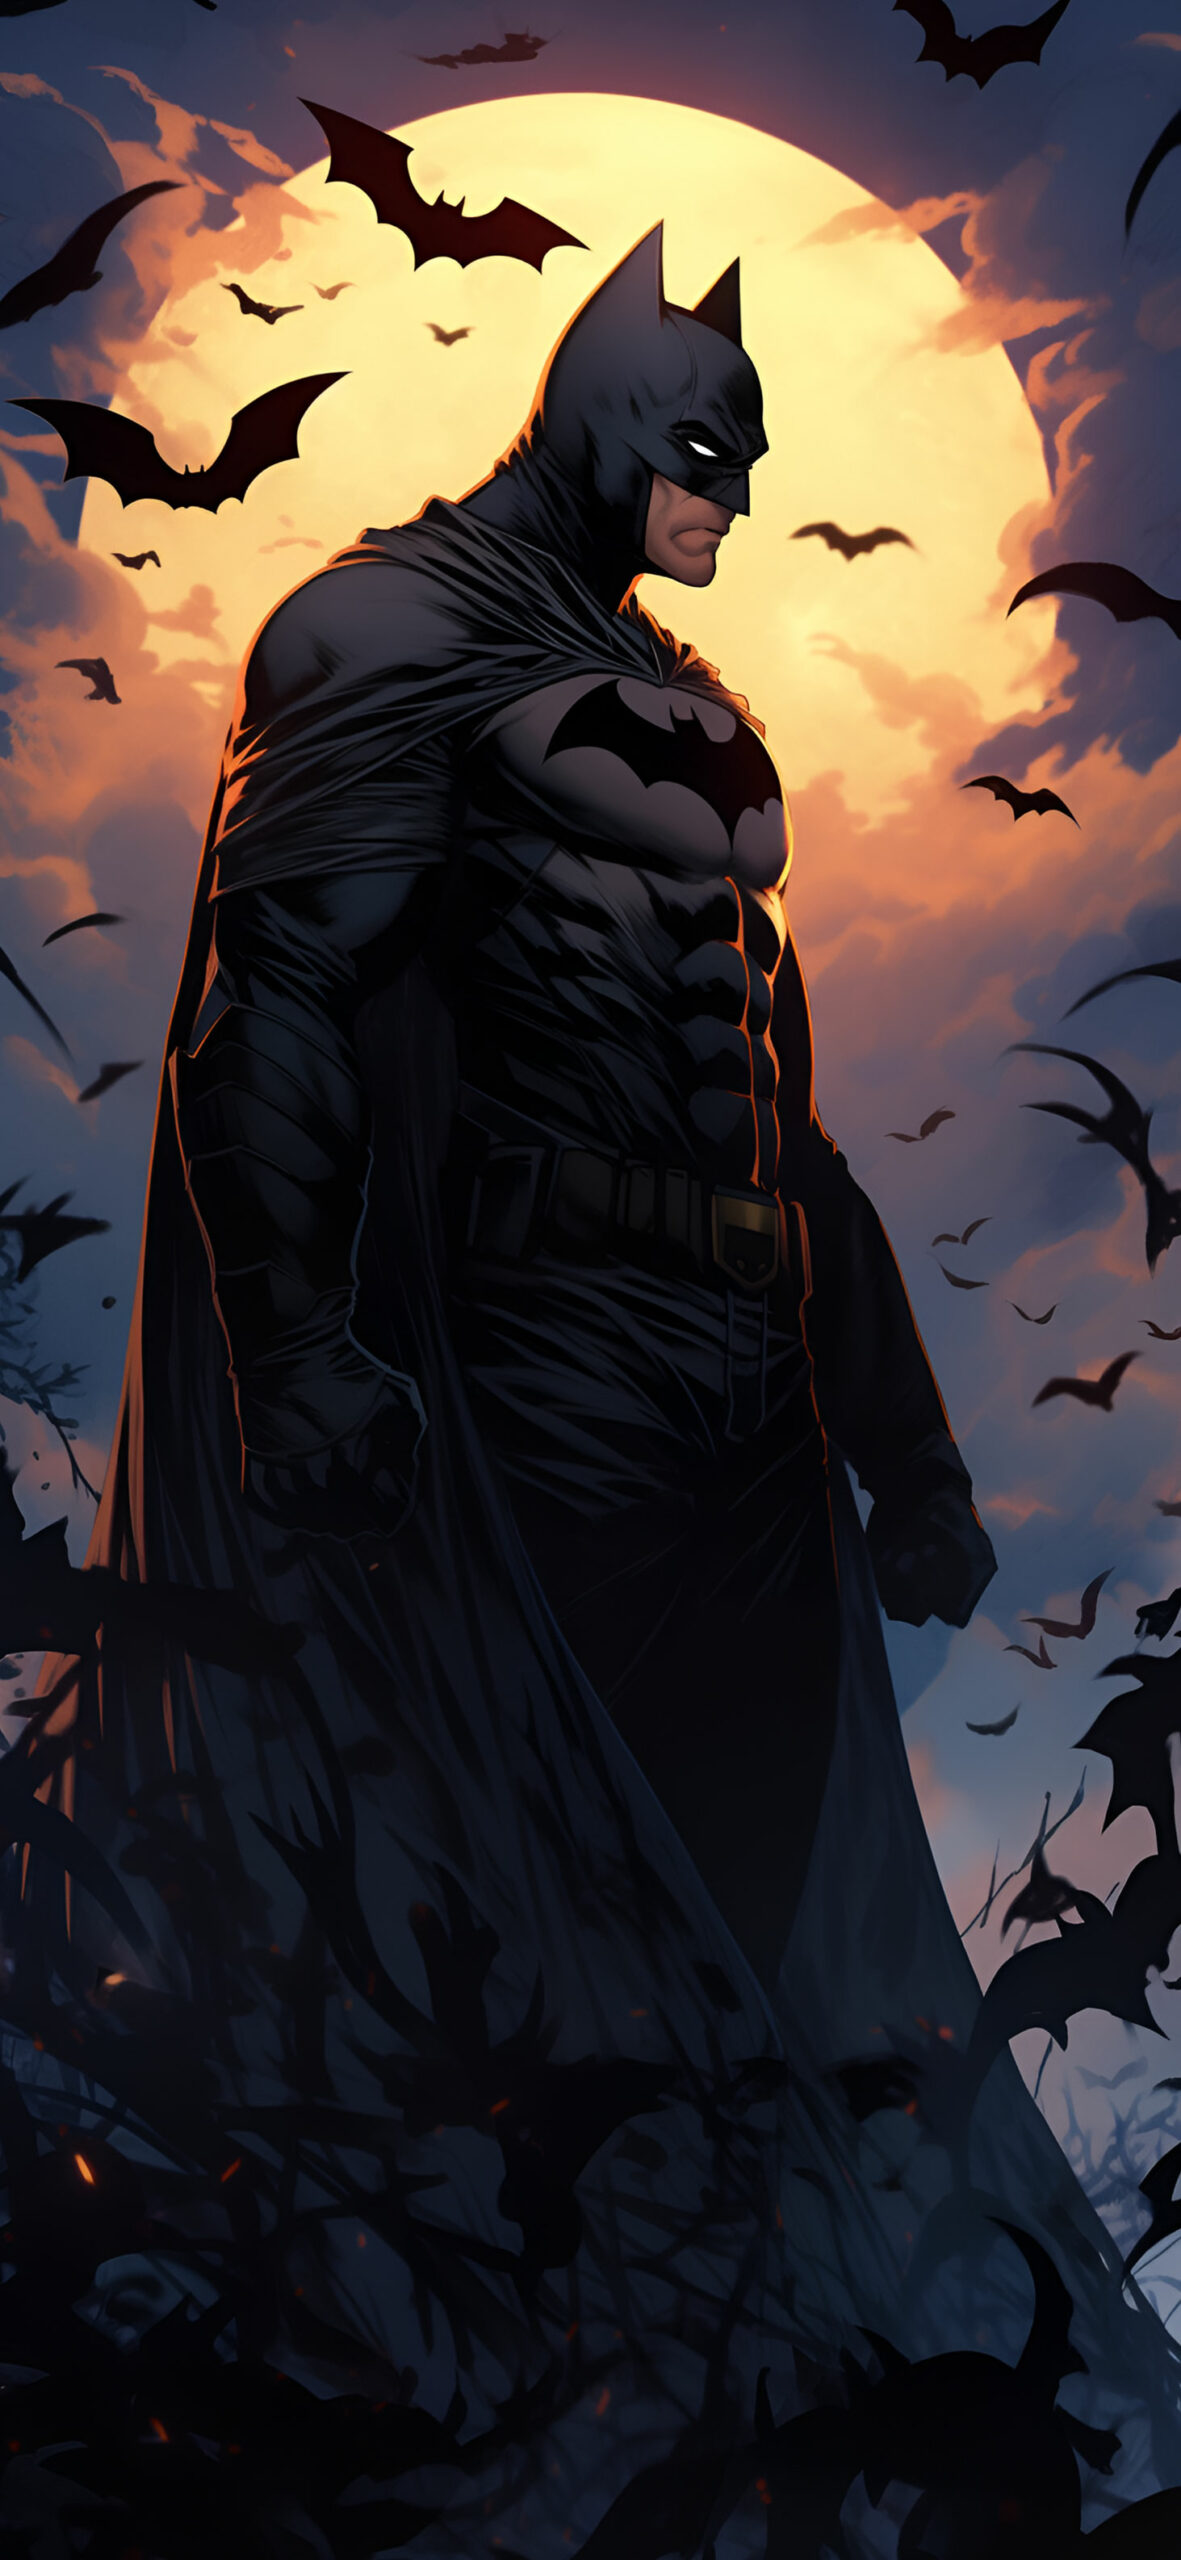 Batman with Bats & Moon Comics Wallpaper Batman Wallpaper for